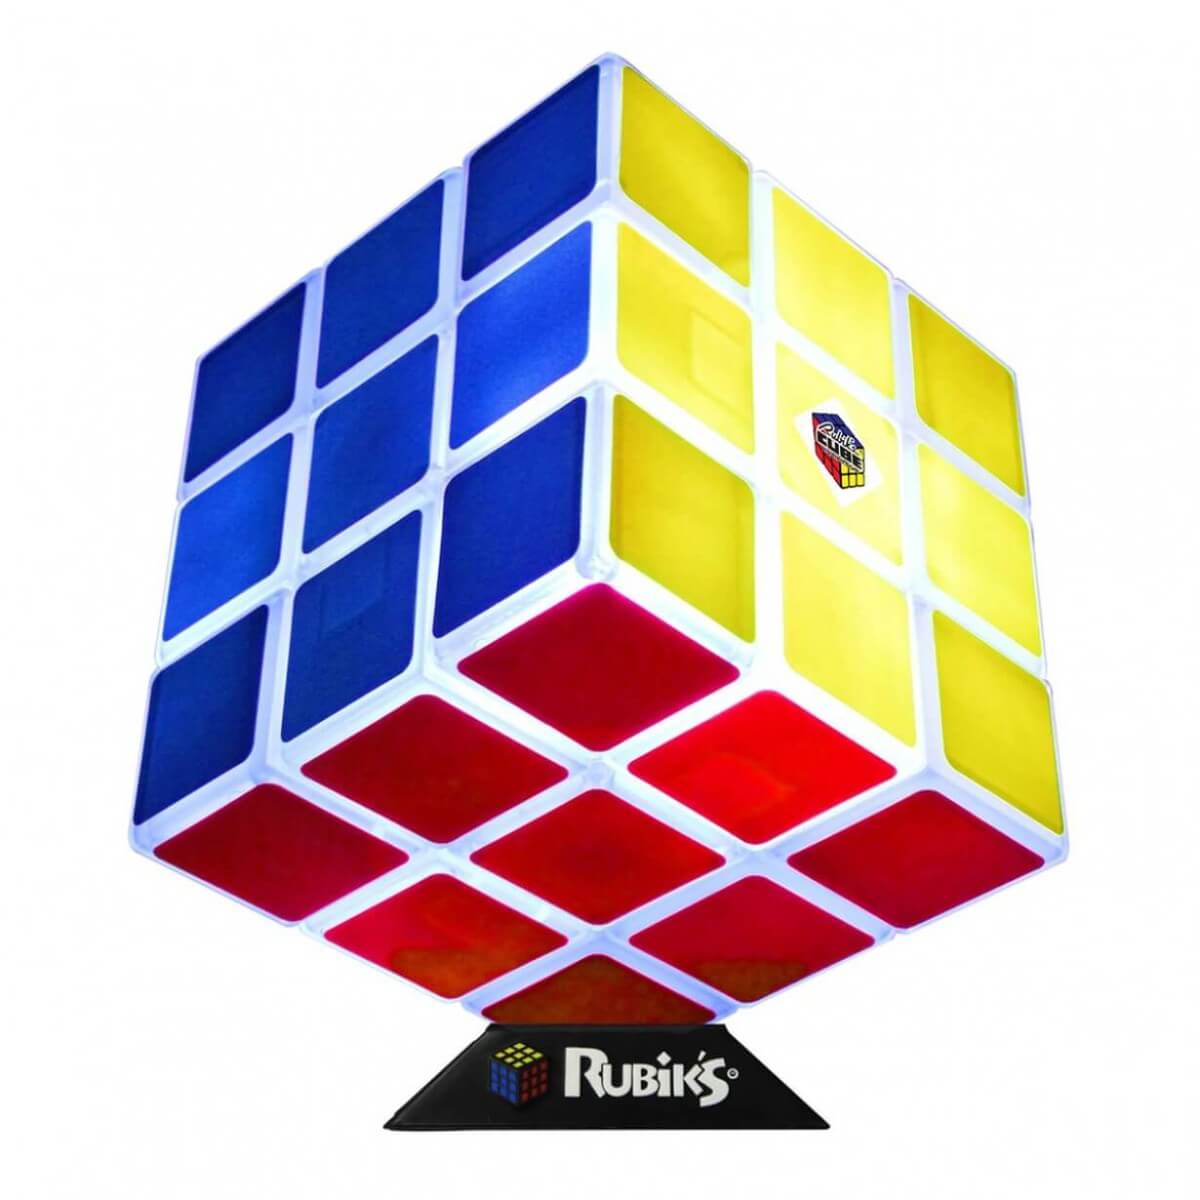 Rubiks Cube Würfel Lampe bei Radbag